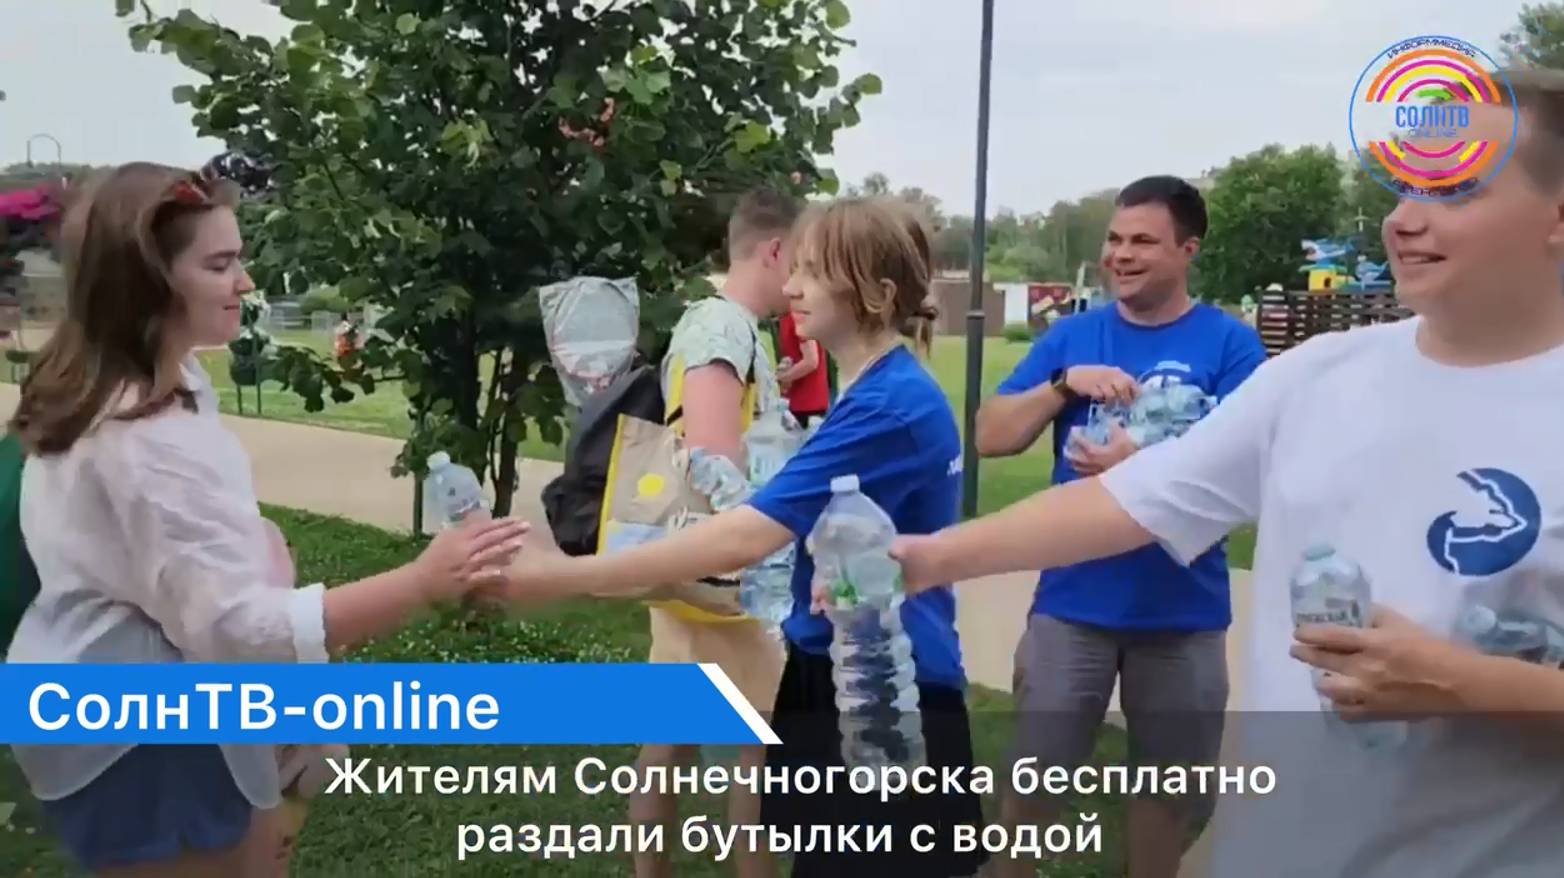 Жителям Солнечногорска бесплатно раздали бутылки с водой